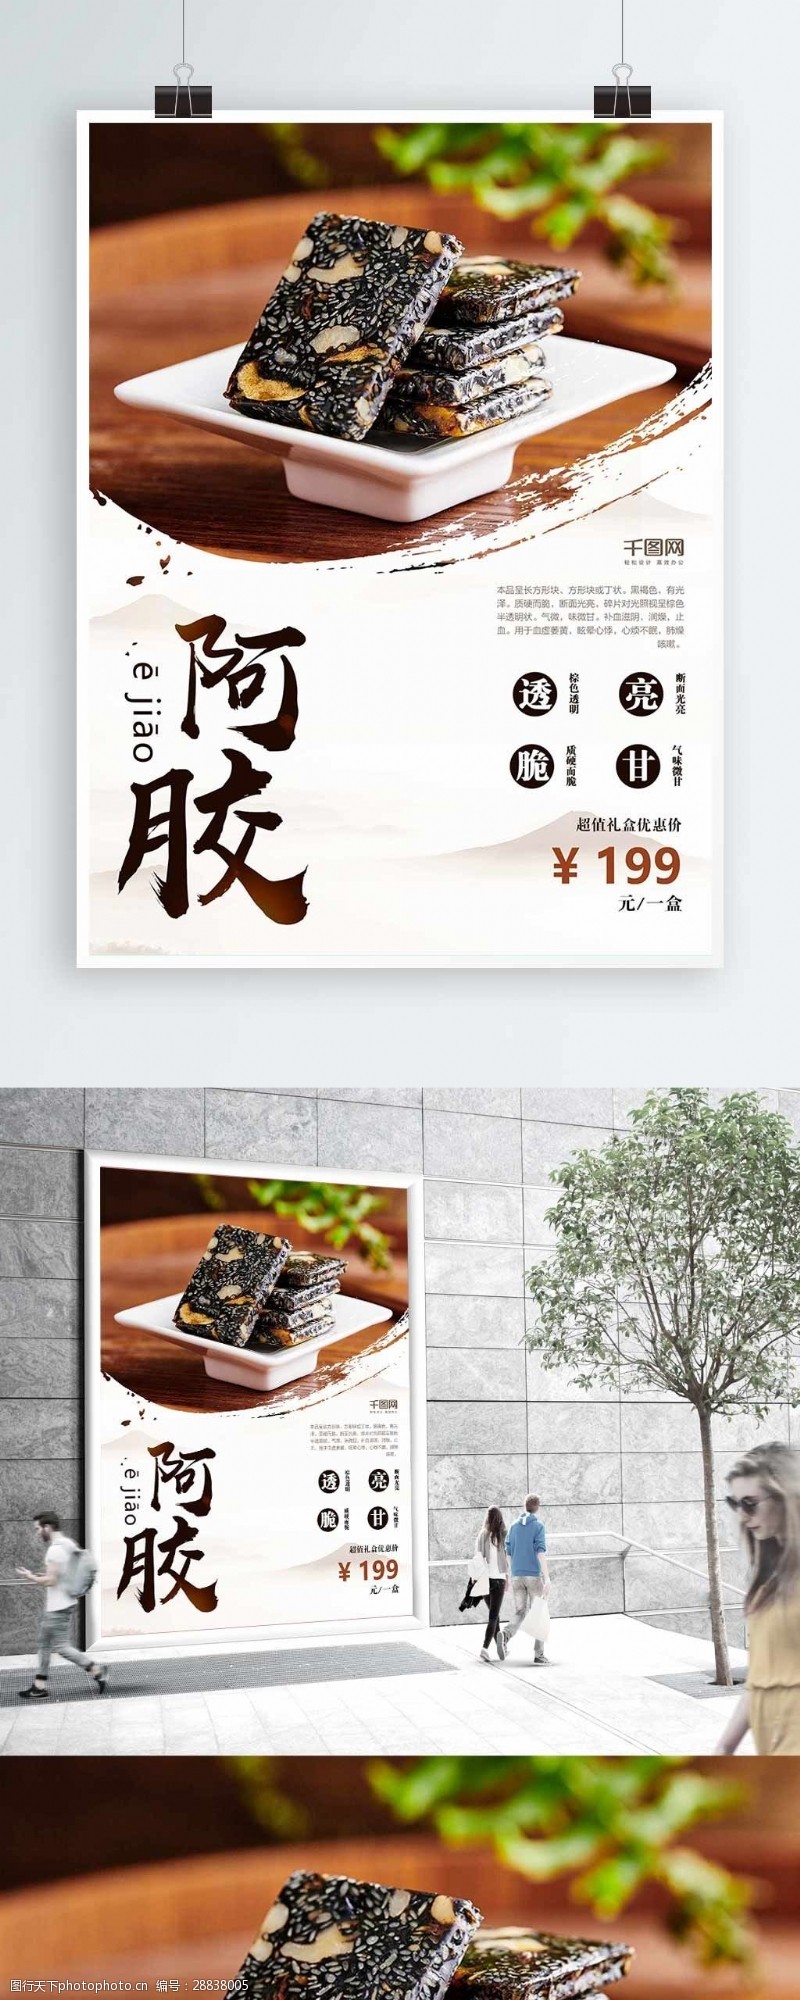 胶片复古中国风美食阿胶养生商业海报设计